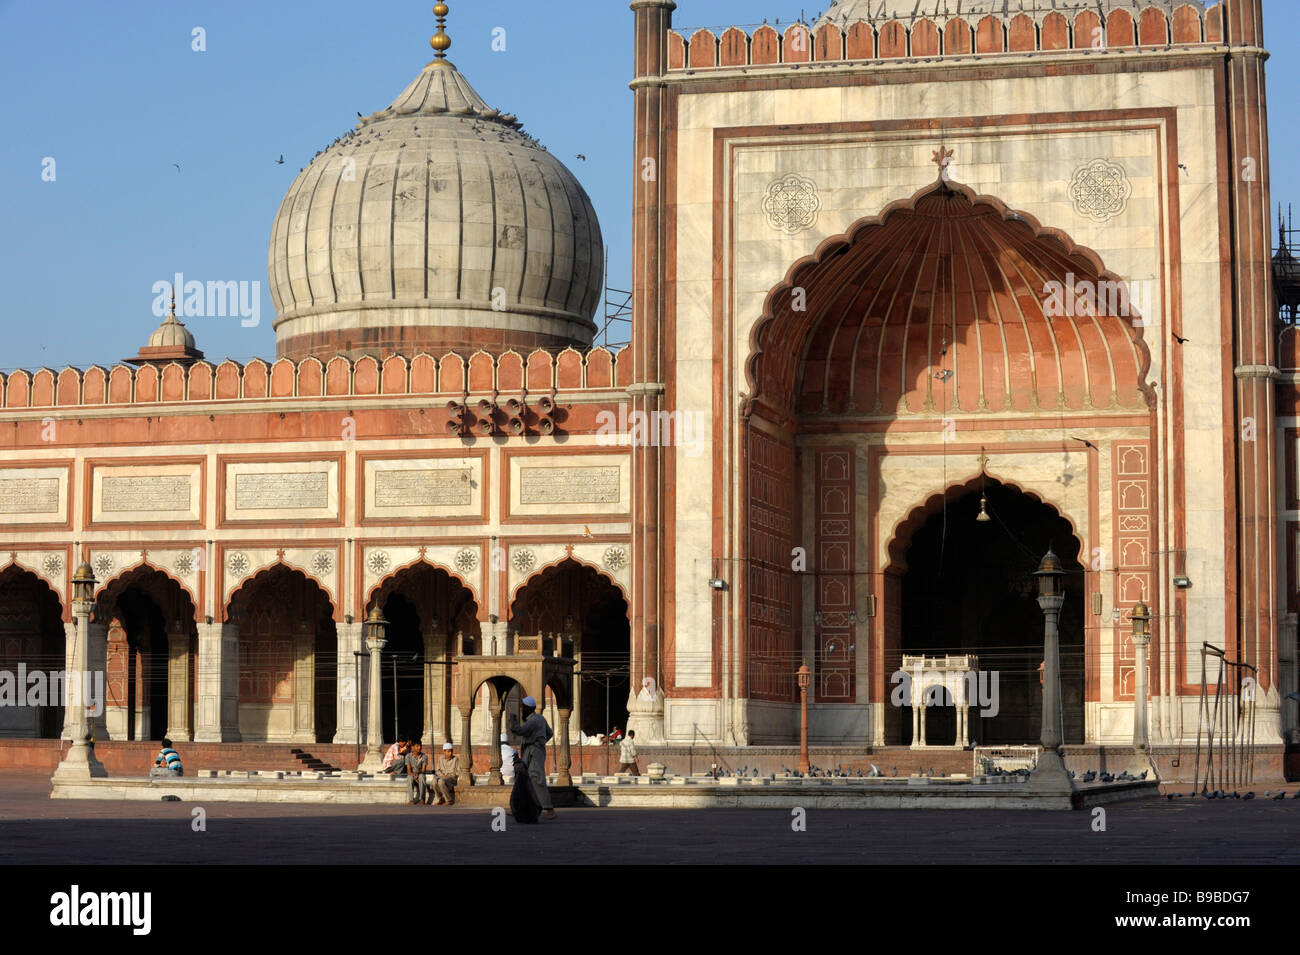 La Jama Masjid dans Old Delhi Inde Banque D'Images